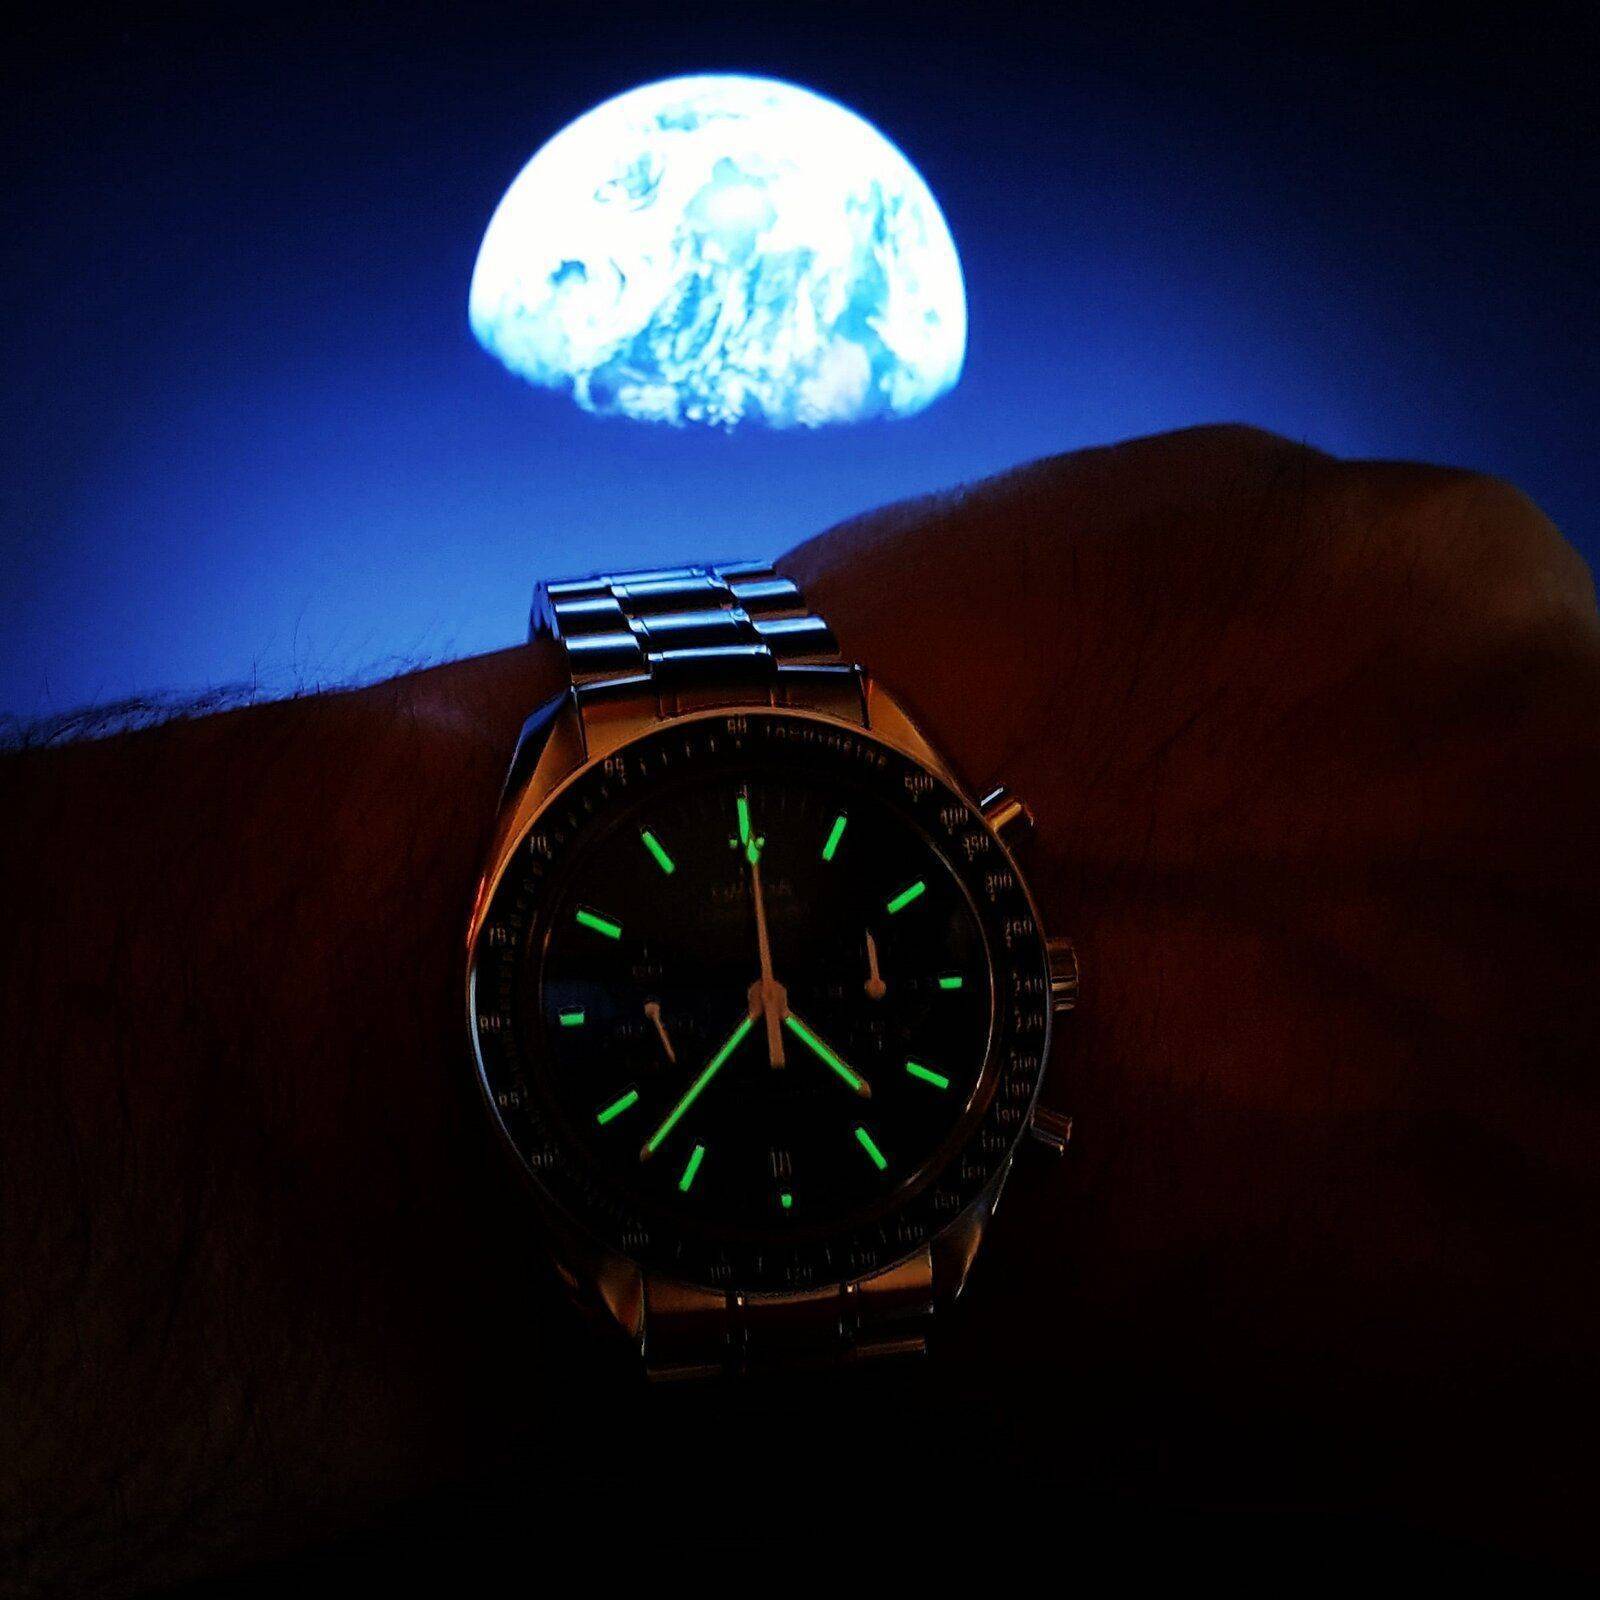 Ω Speedmaster Moonwatch Co-Axial Chronograph 44.25 mm Cal. 9300 (2).jpg